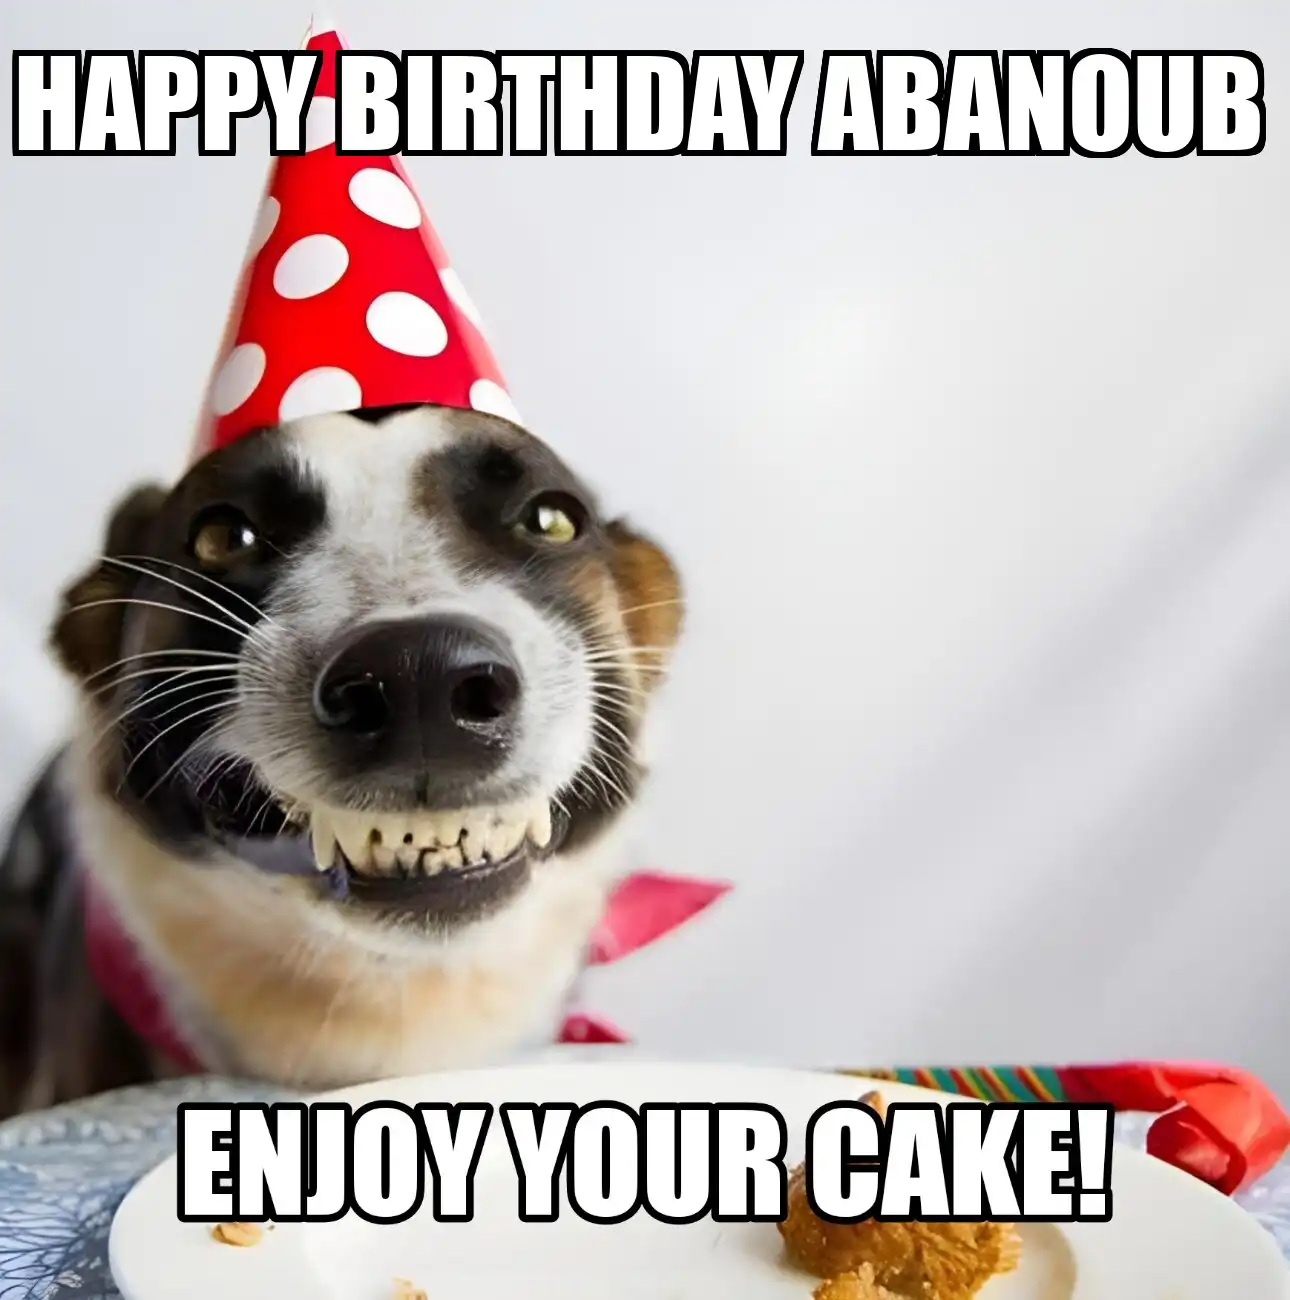 Happy Birthday Abanoub Enjoy Your Cake Dog Meme